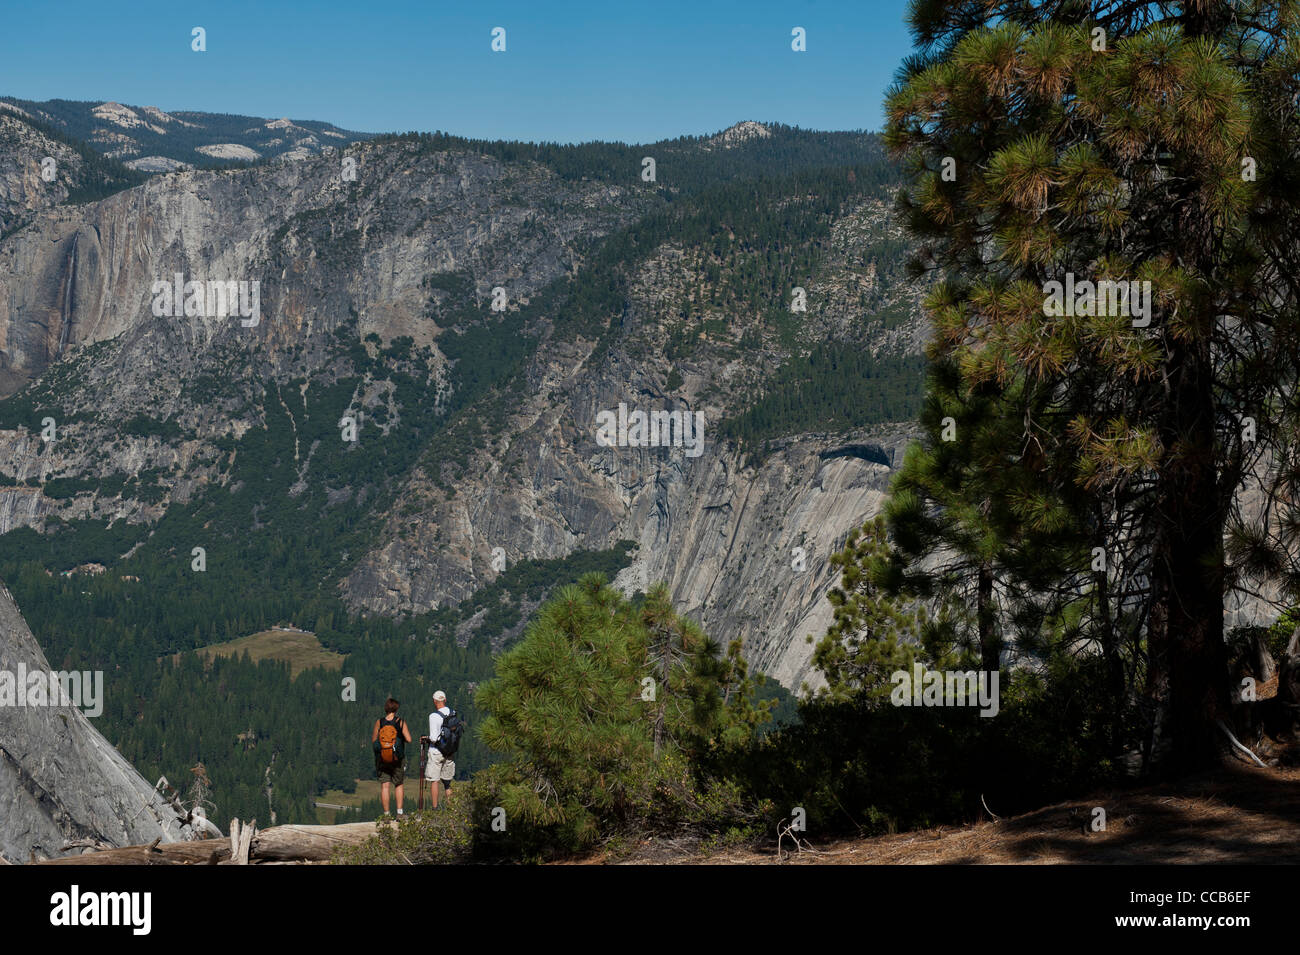 Escursionismo Il sentiero panoramico. Il parco nazionale di Yosemite Valley View a nord-ovest dal punto panoramico. Parco Nazionale di Yosemite. In California. Stati Uniti d'America Foto Stock